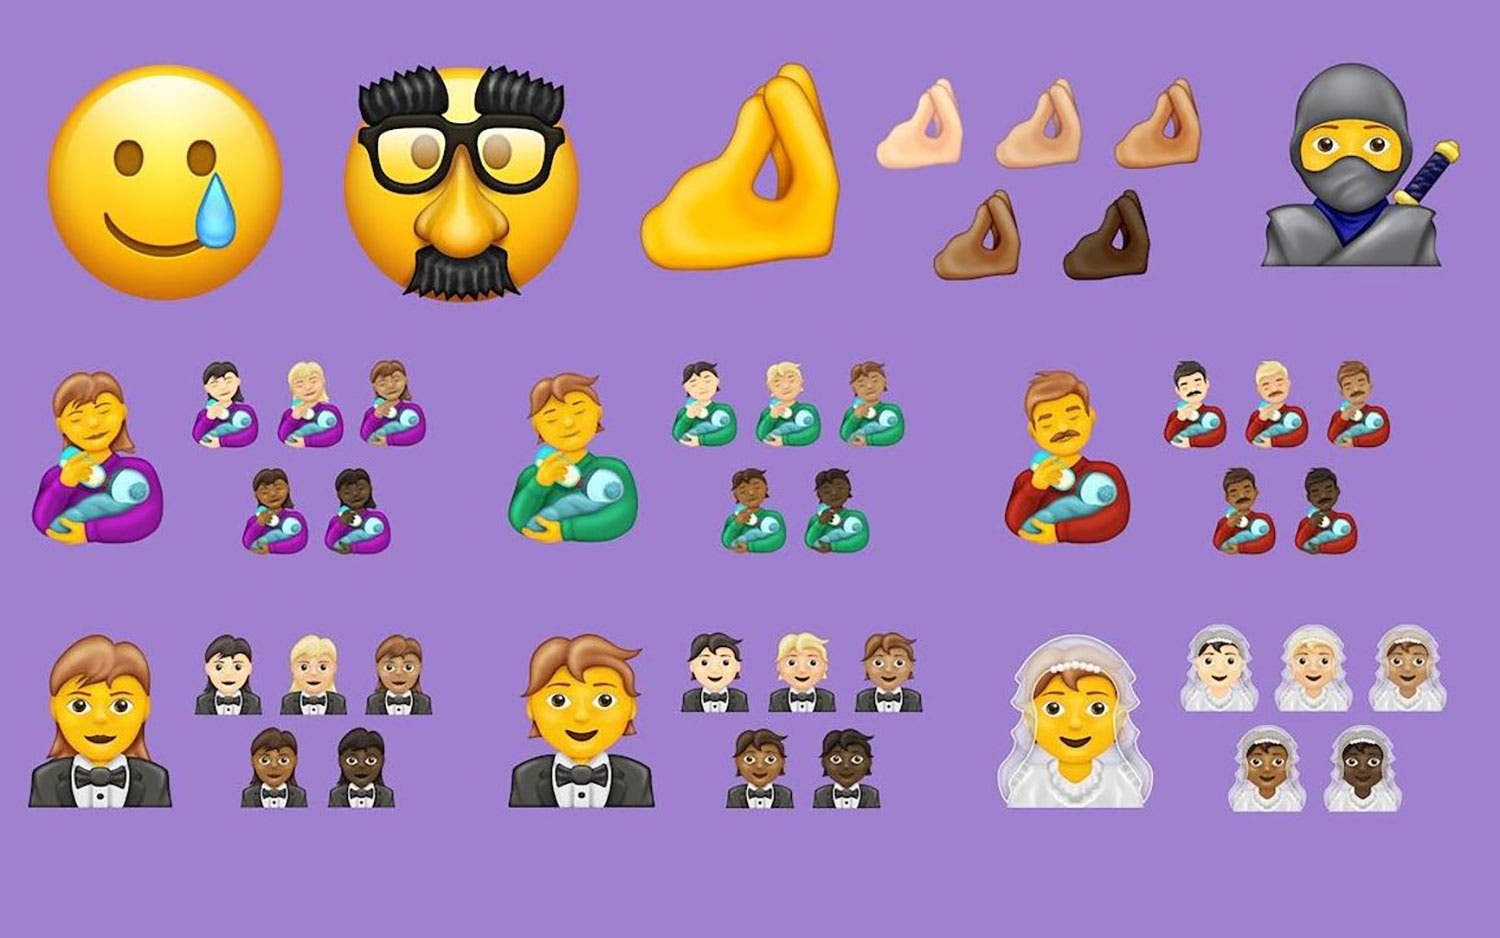 ¡Busca tu favorito! Conoce los nuevos emojis de WhatsApp, Android, iOS y otras plataformas